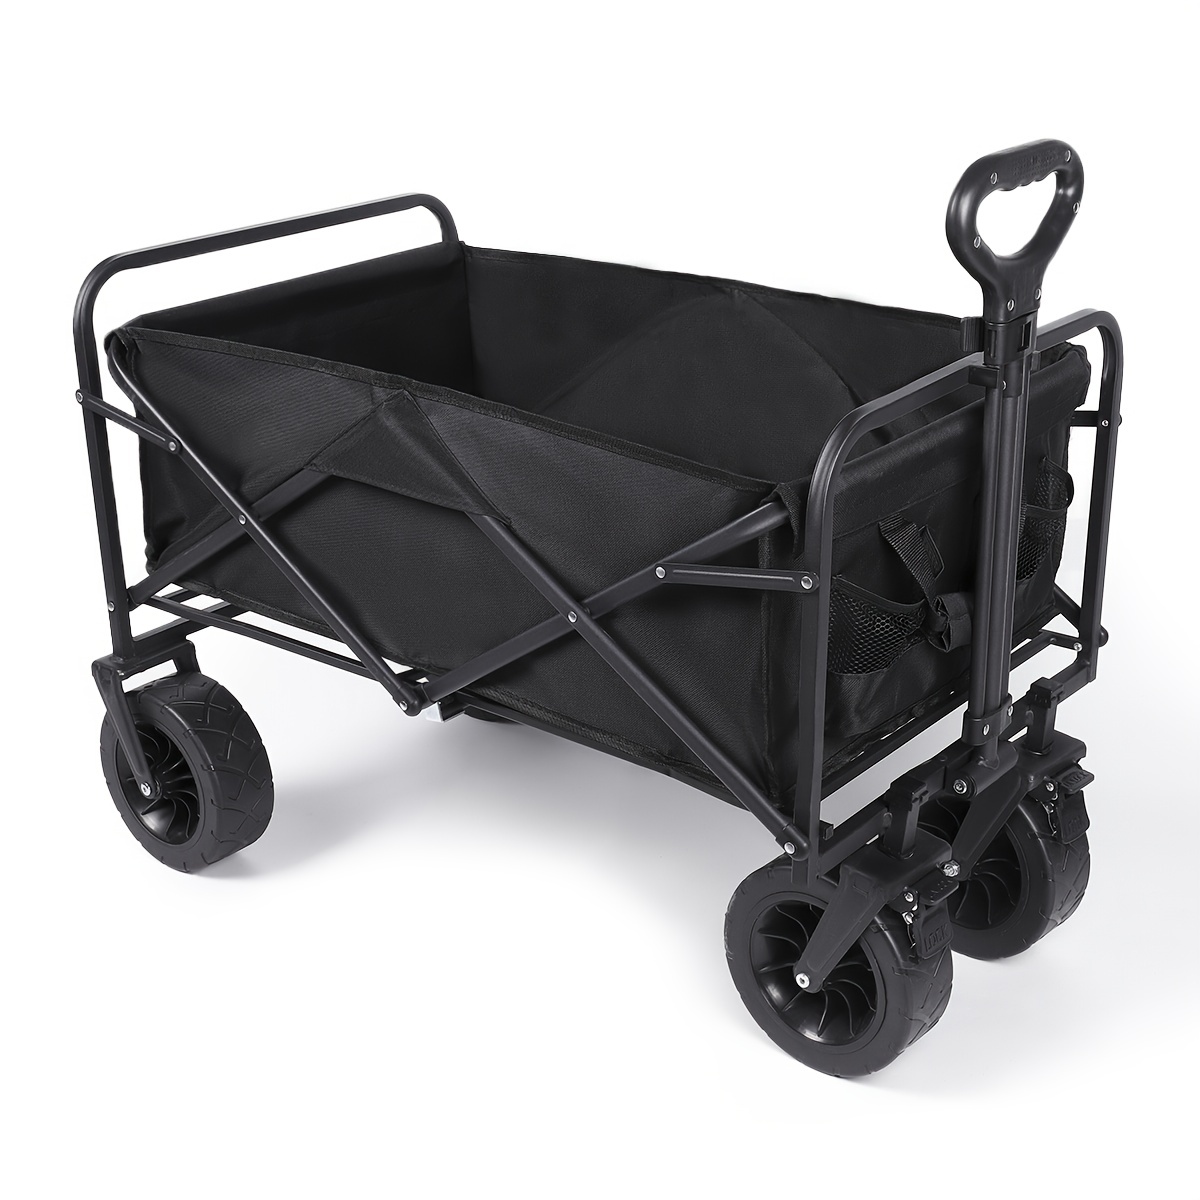 Large Folding Utility Cart with Wheels, Black